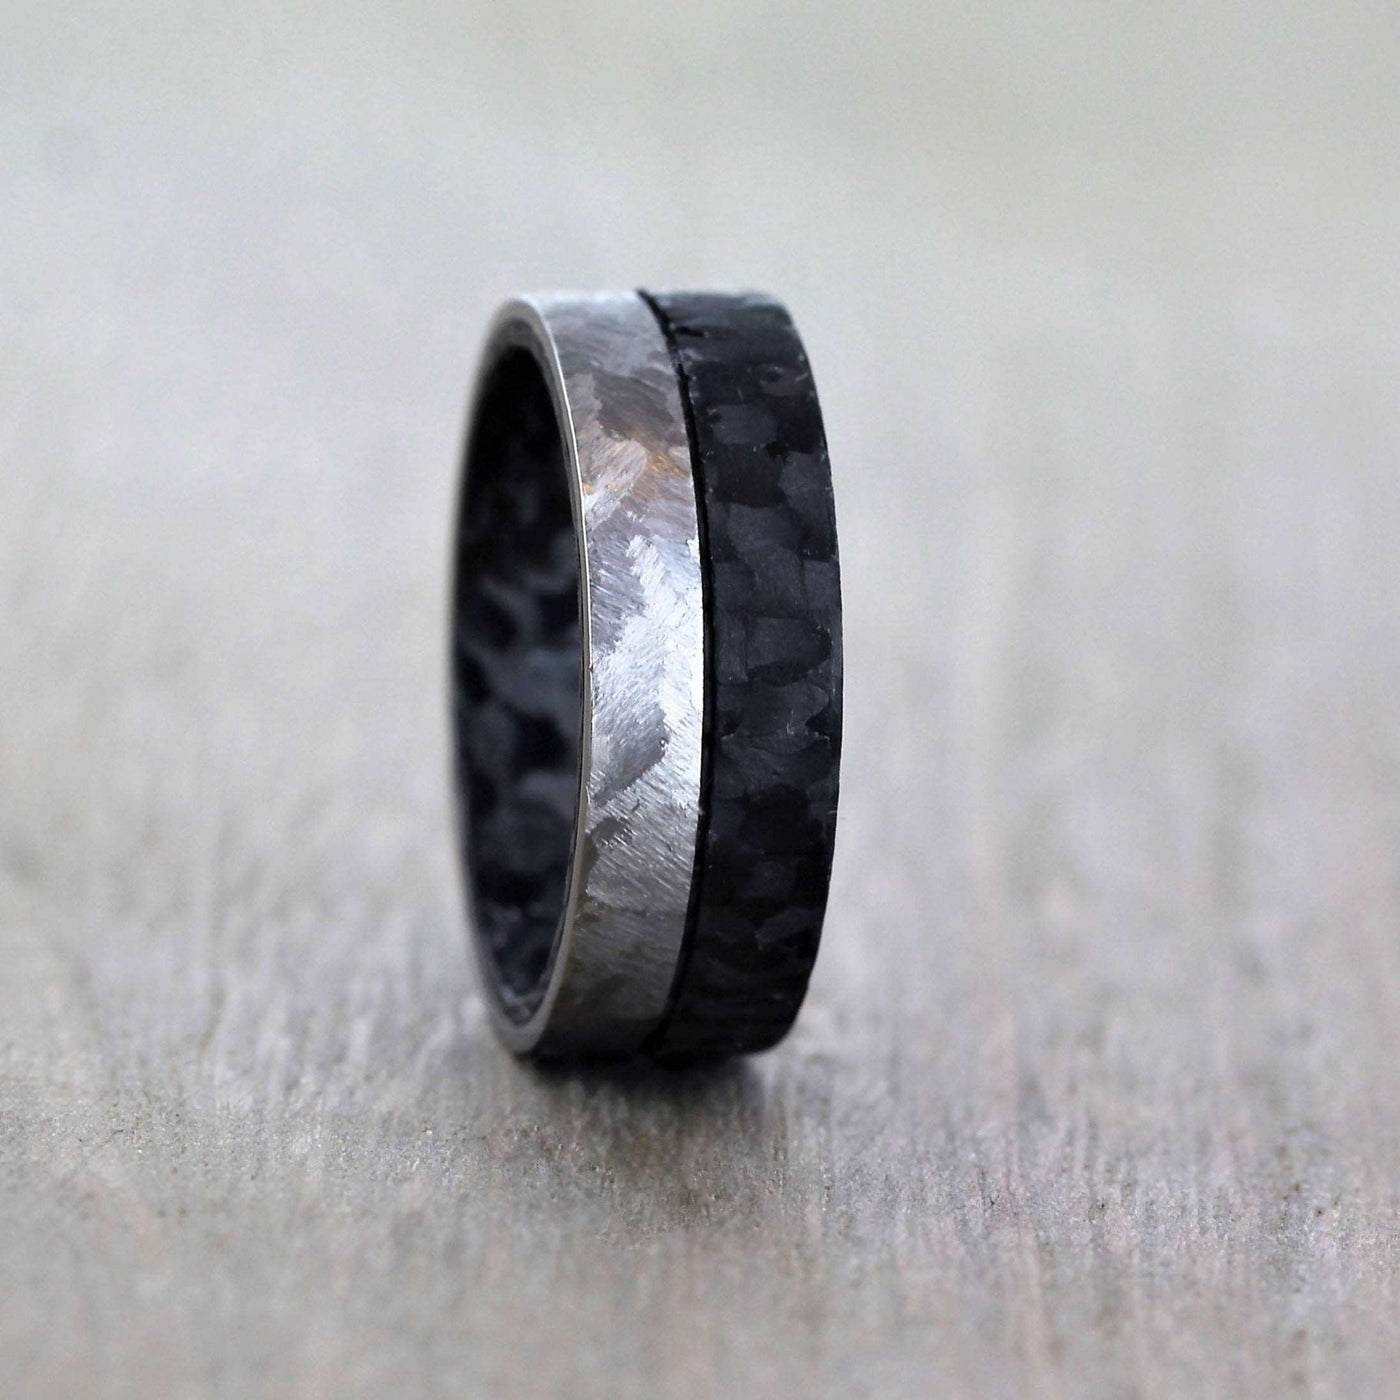 Half Black half Grey, Carbon Fibre and Titanium wedding band